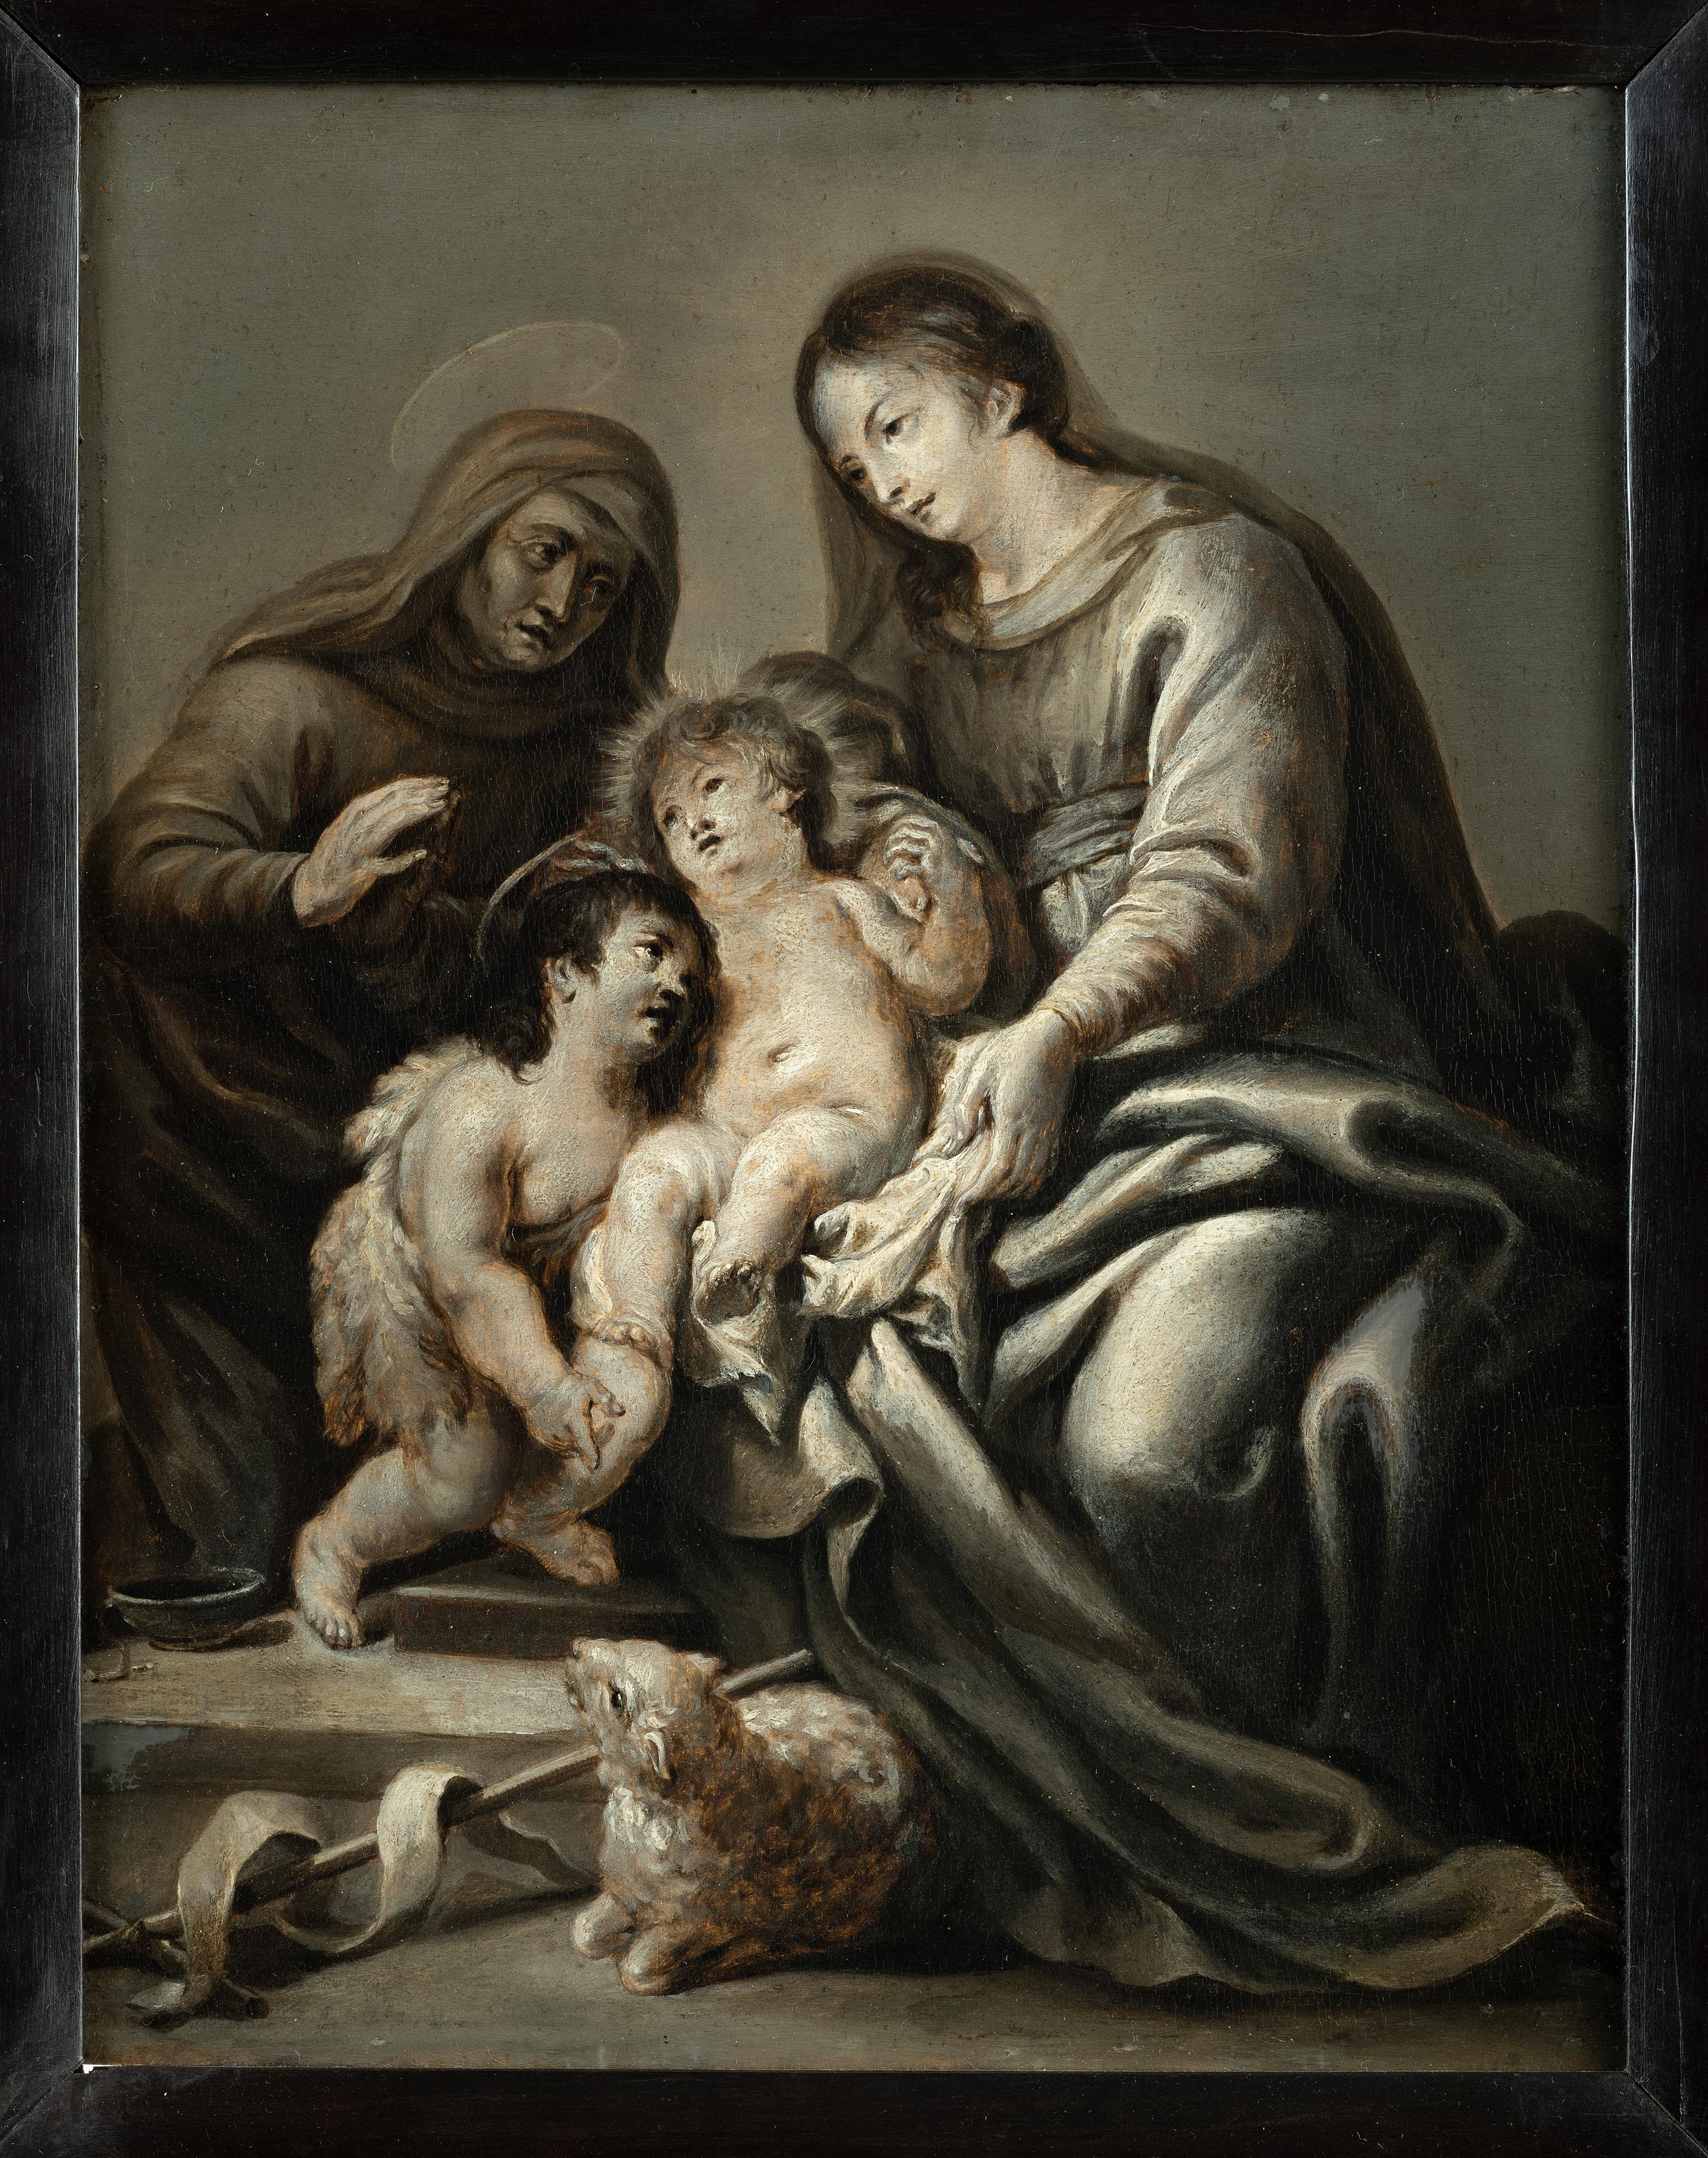 Cornelis Schut, zugeschrieben zu
(1597 - Antwerpen - 1655)

Maria mit Kind, die heilige Elisabeth und Johannes der Täufer en grisaille
Öl auf Holz, 33,5 x 26,5 cm 

Cornelis Schut wurde in Antwerpen geboren und wurde - nach seiner Lehre bei einem